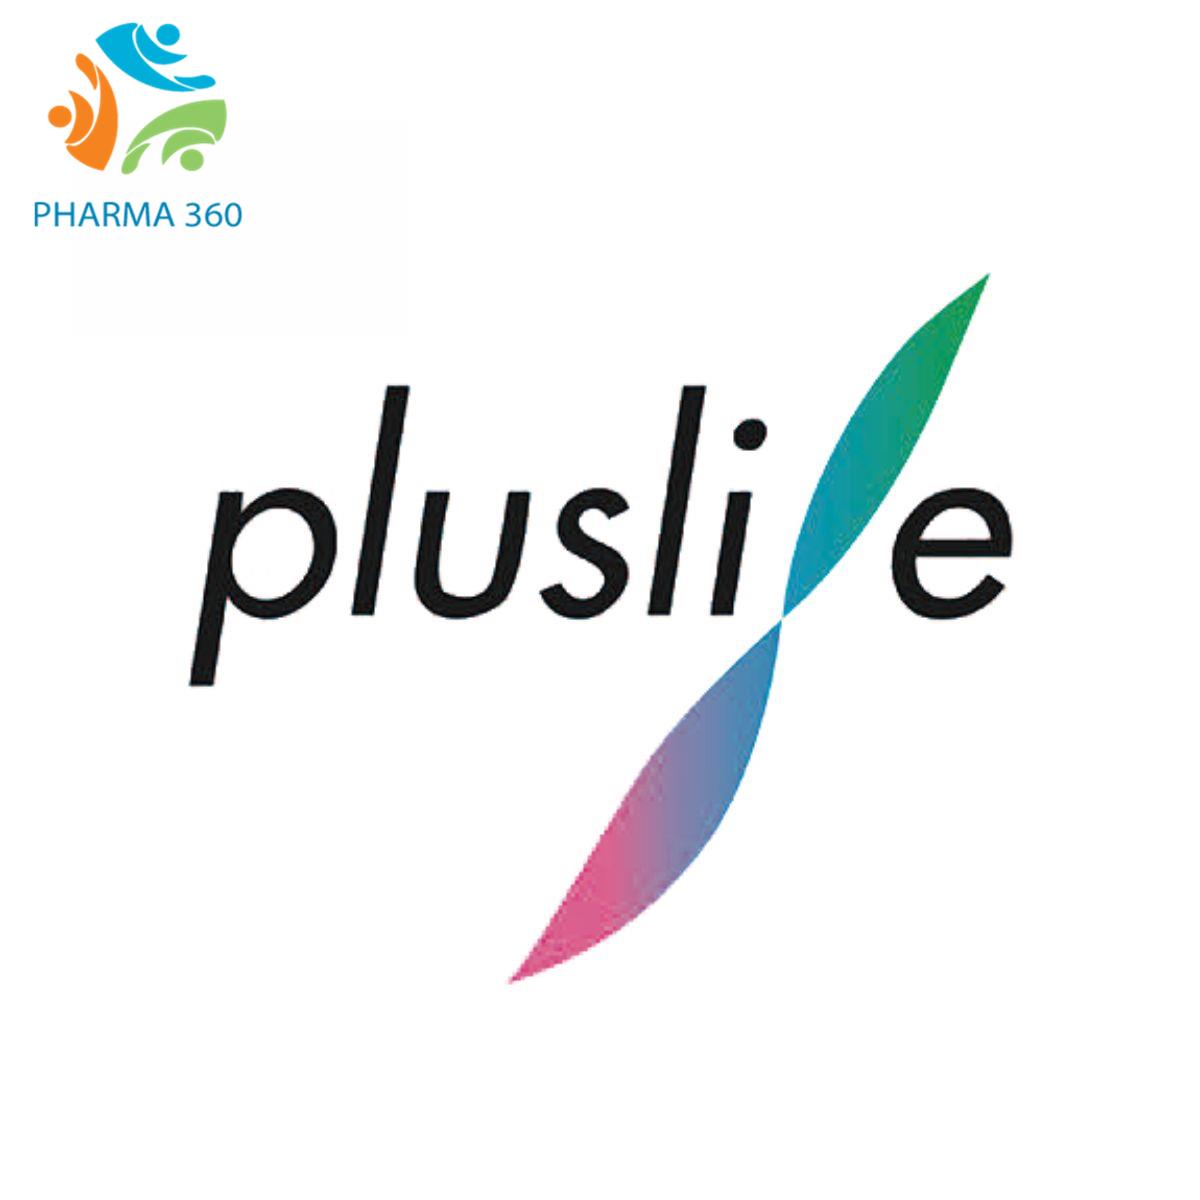 Guangzhou Pluslife Biotech Co., Ltd